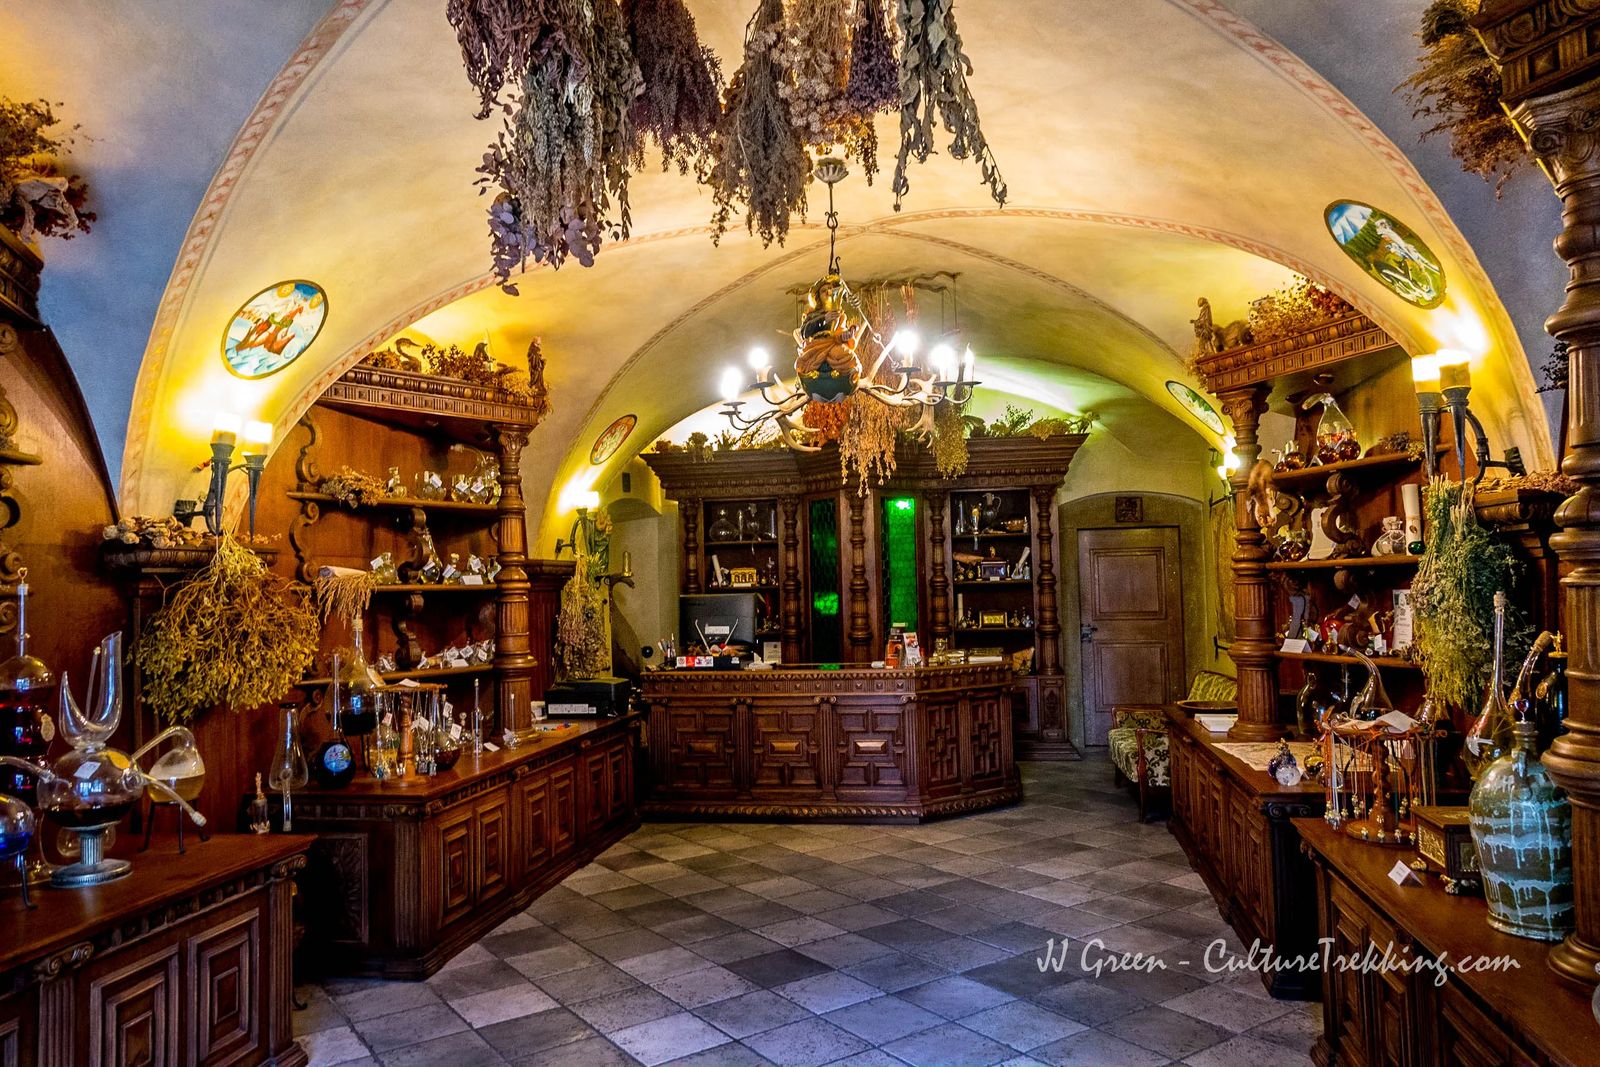 The Alchemist Museum in Prague